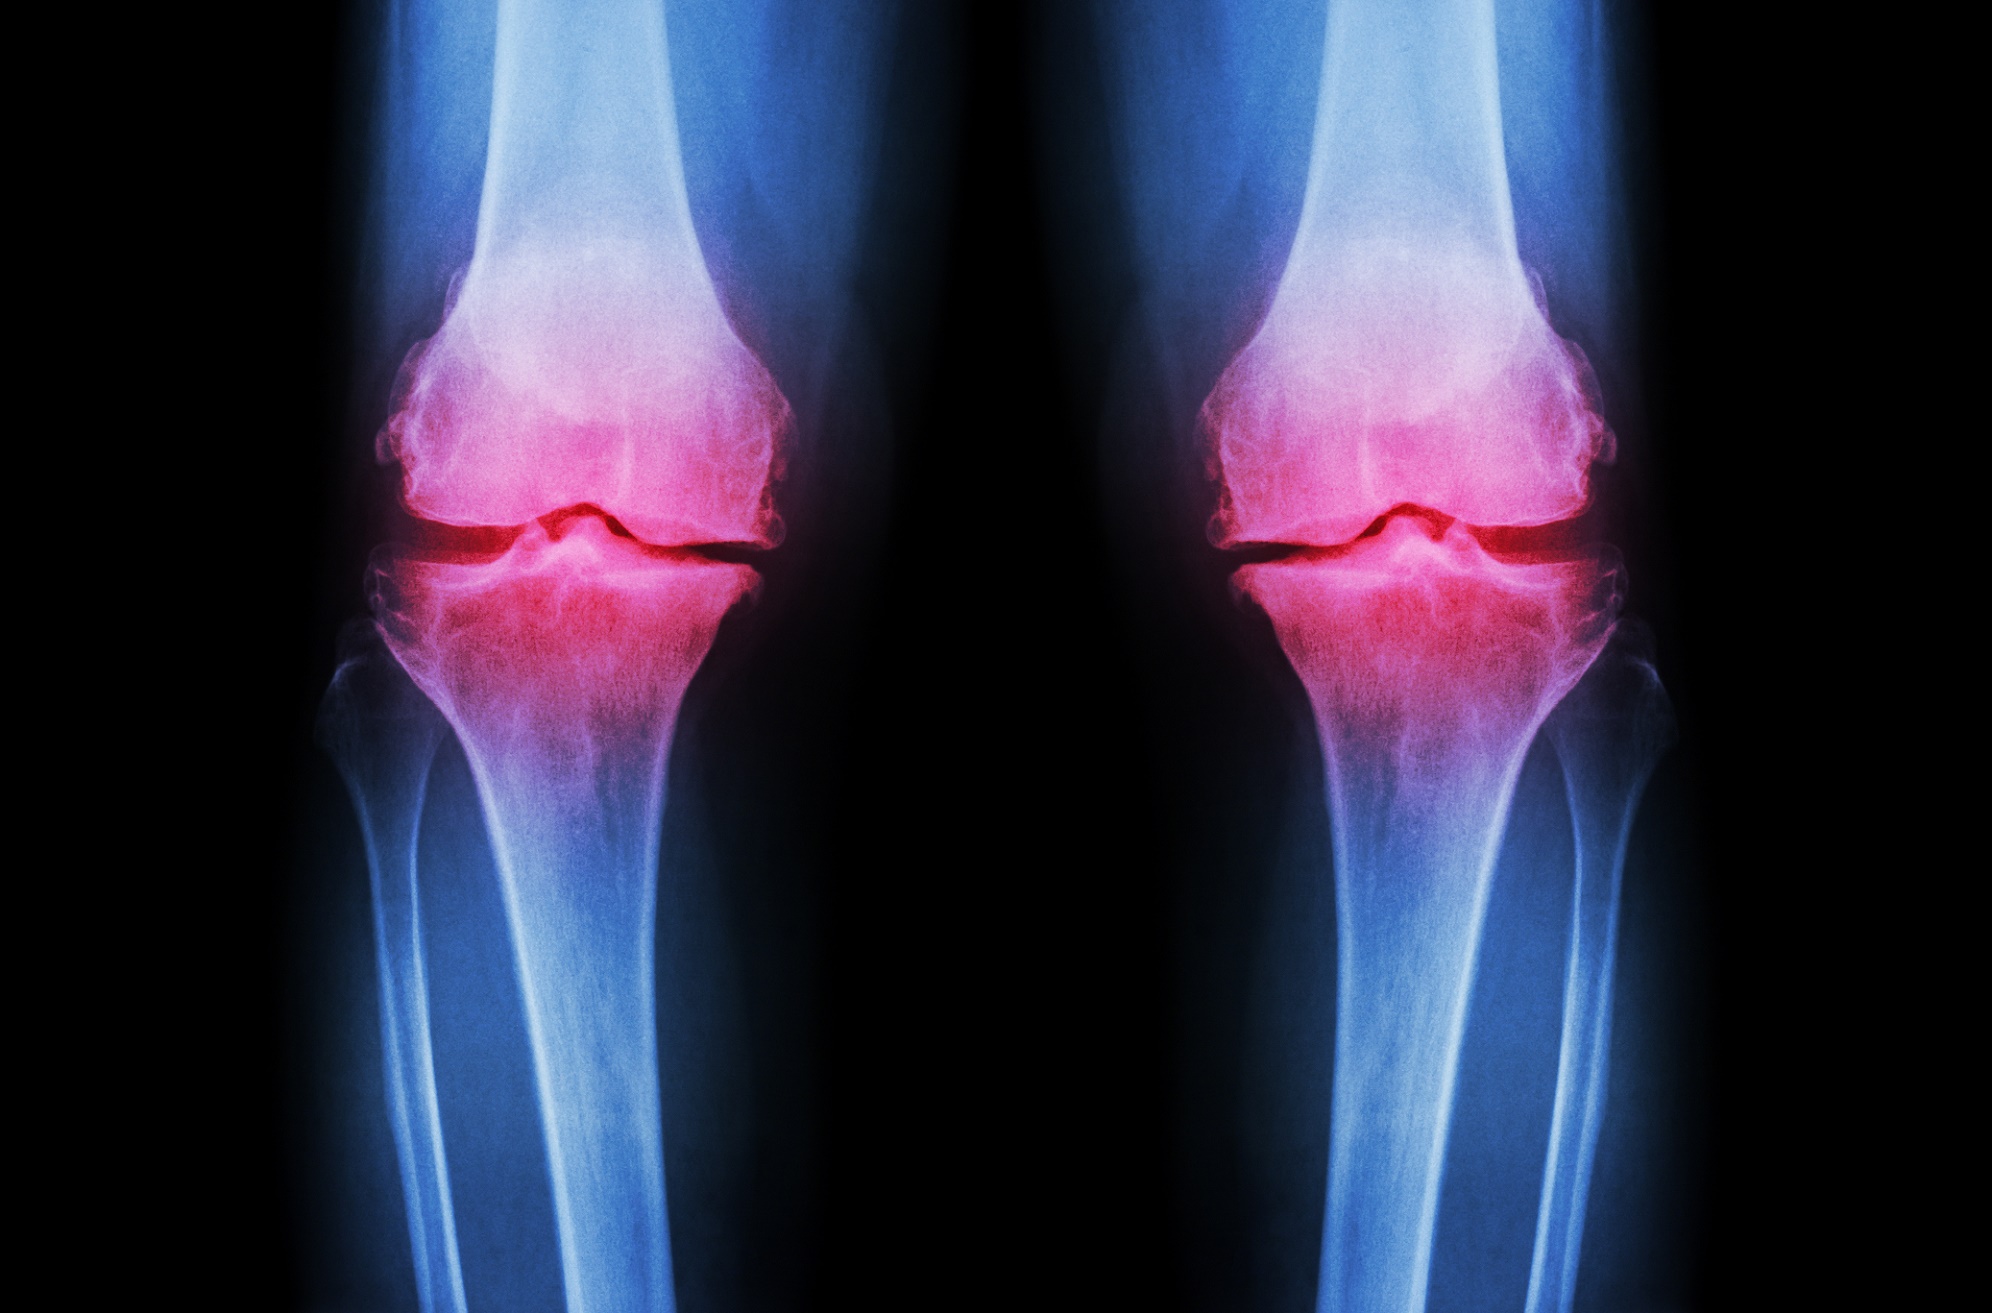 L’arthrose est une maladie douloureuse dans laquelle le cartilage est détruit. Et si l’impression 3D pouvait le régénérer ? © Puwadol Jaturawutthichai, Shutterstock